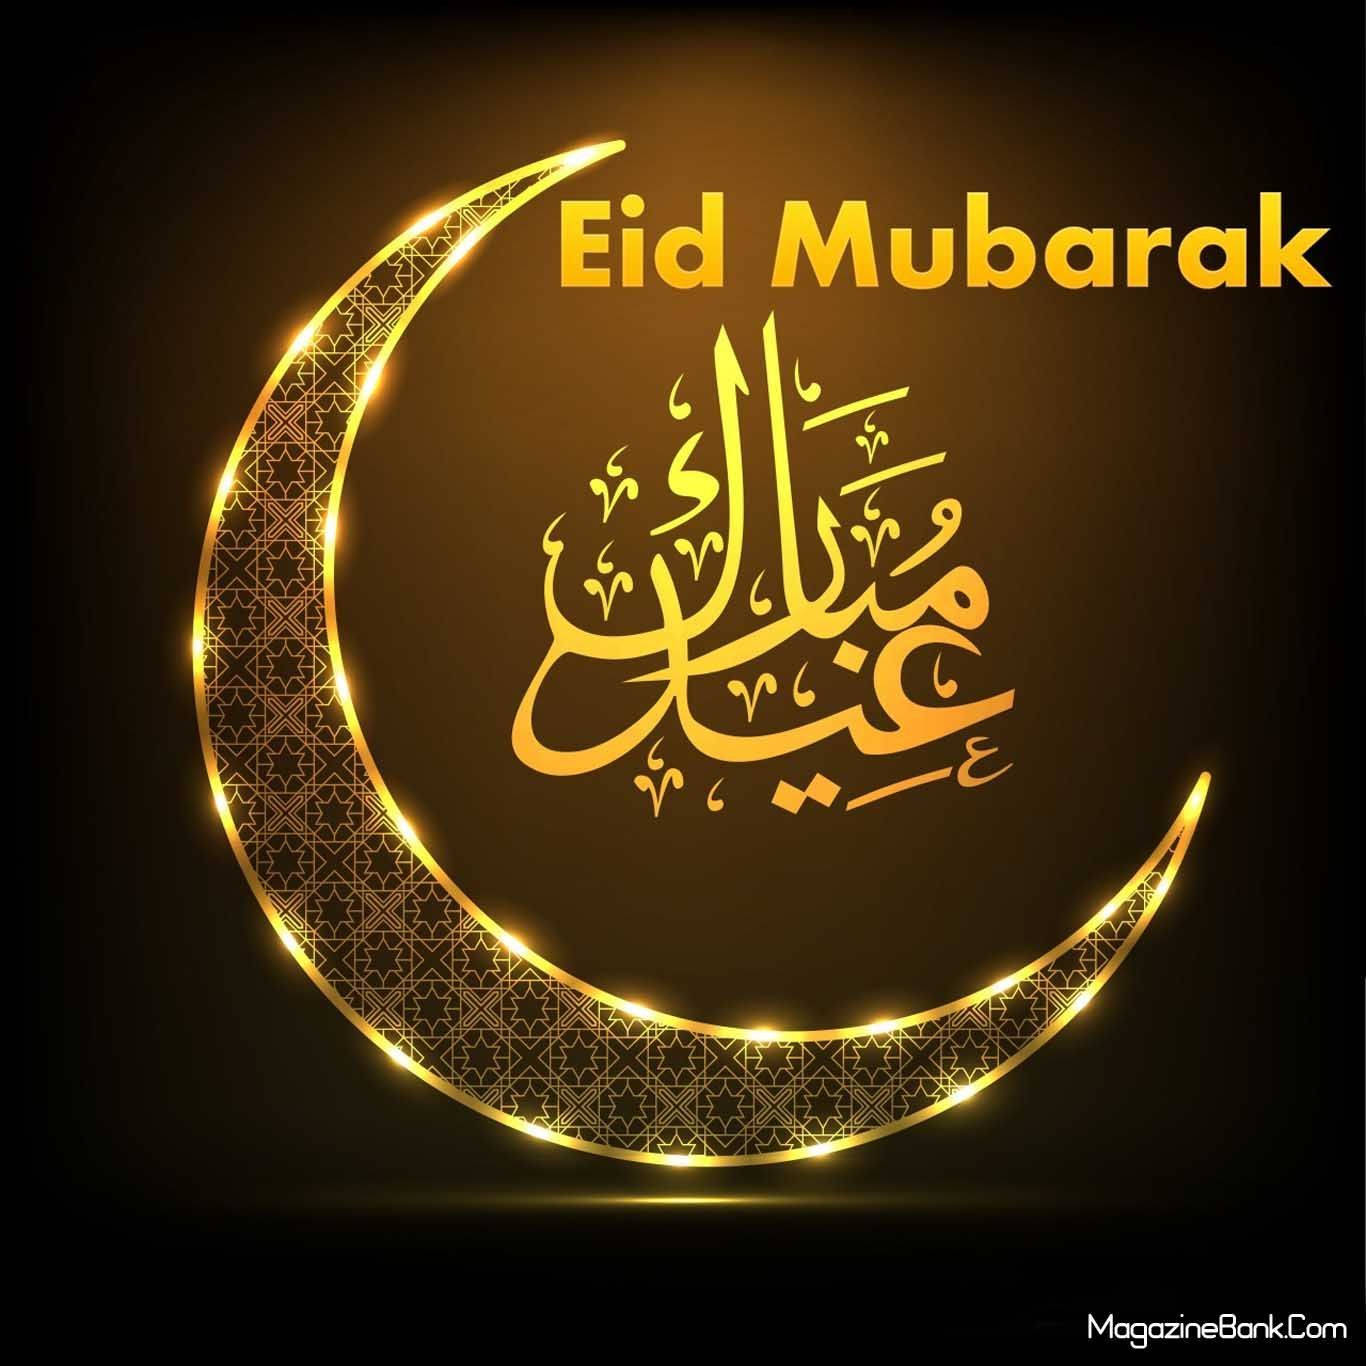 Celebrating Eid Mubarak - The Festival Of Blessings Wallpaper